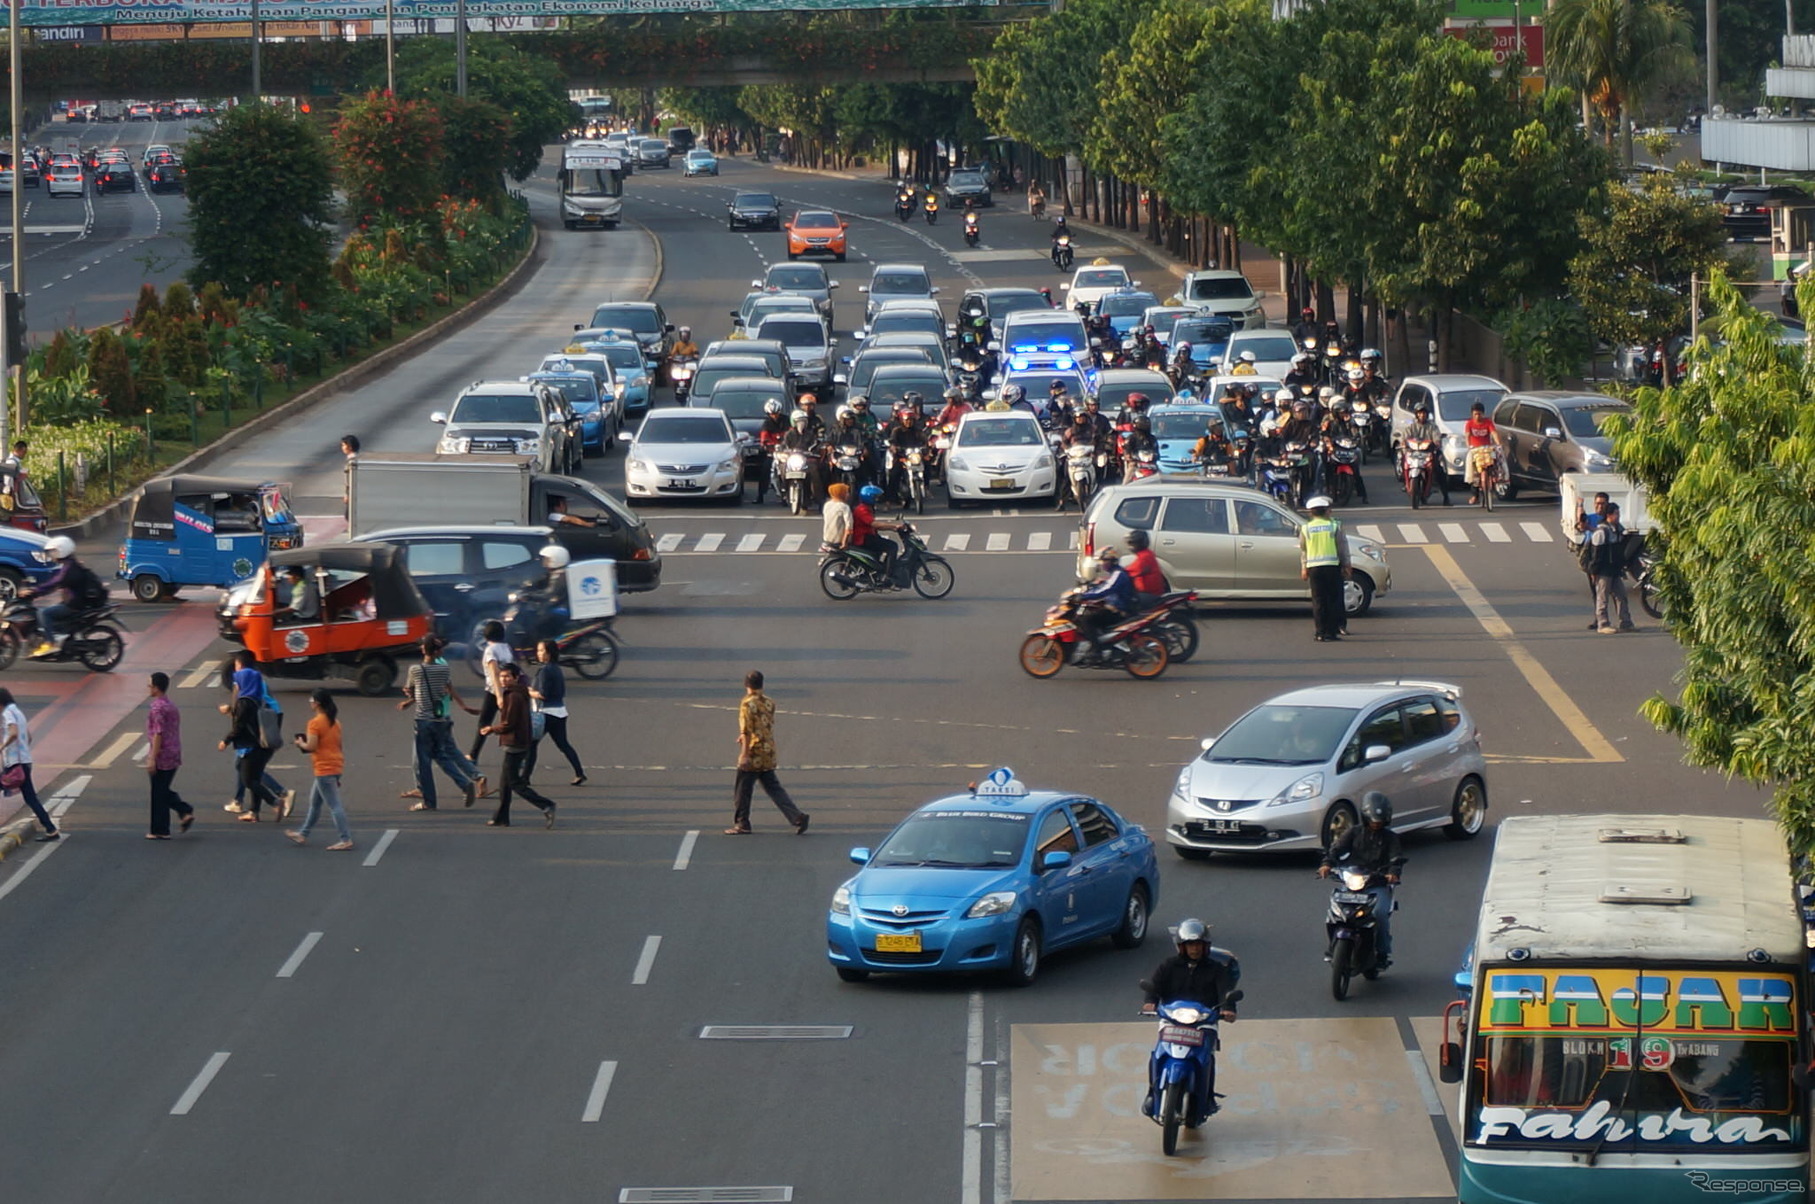 インドネシア ジャカルタ市内の道路